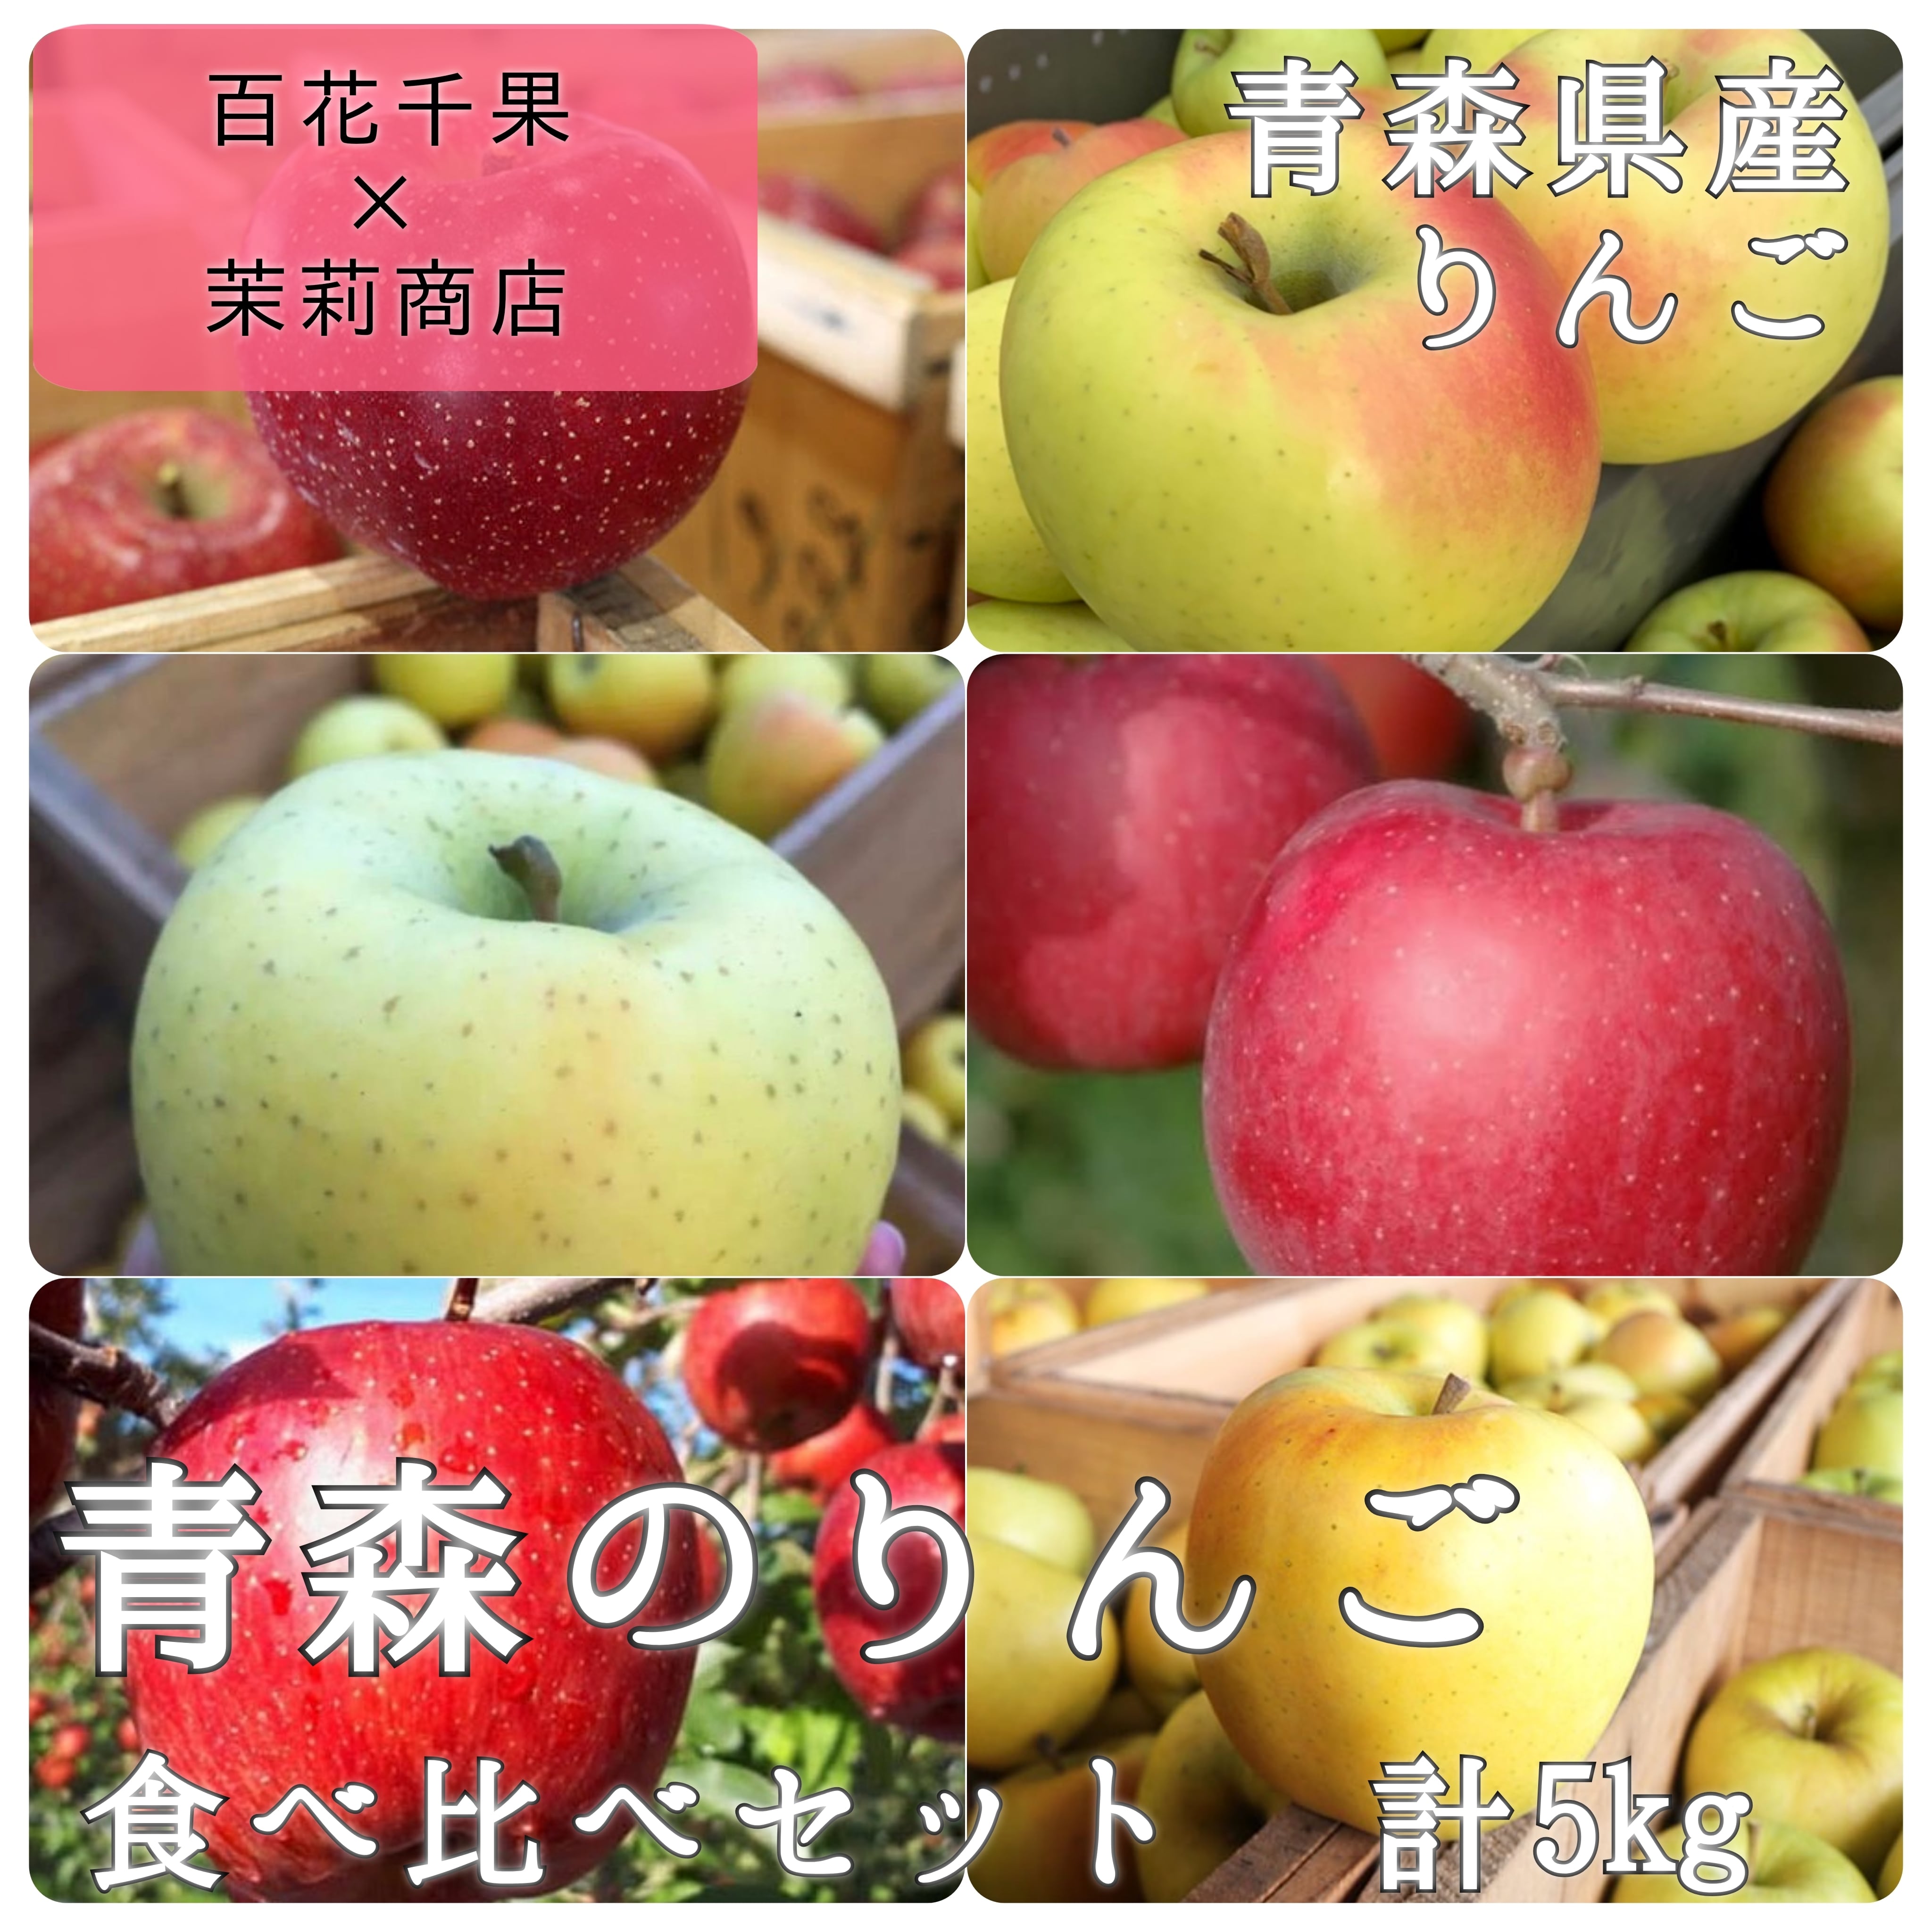 ★期間限定★青森県産 ふじ りんご 家庭用 6~8玉 ⑦